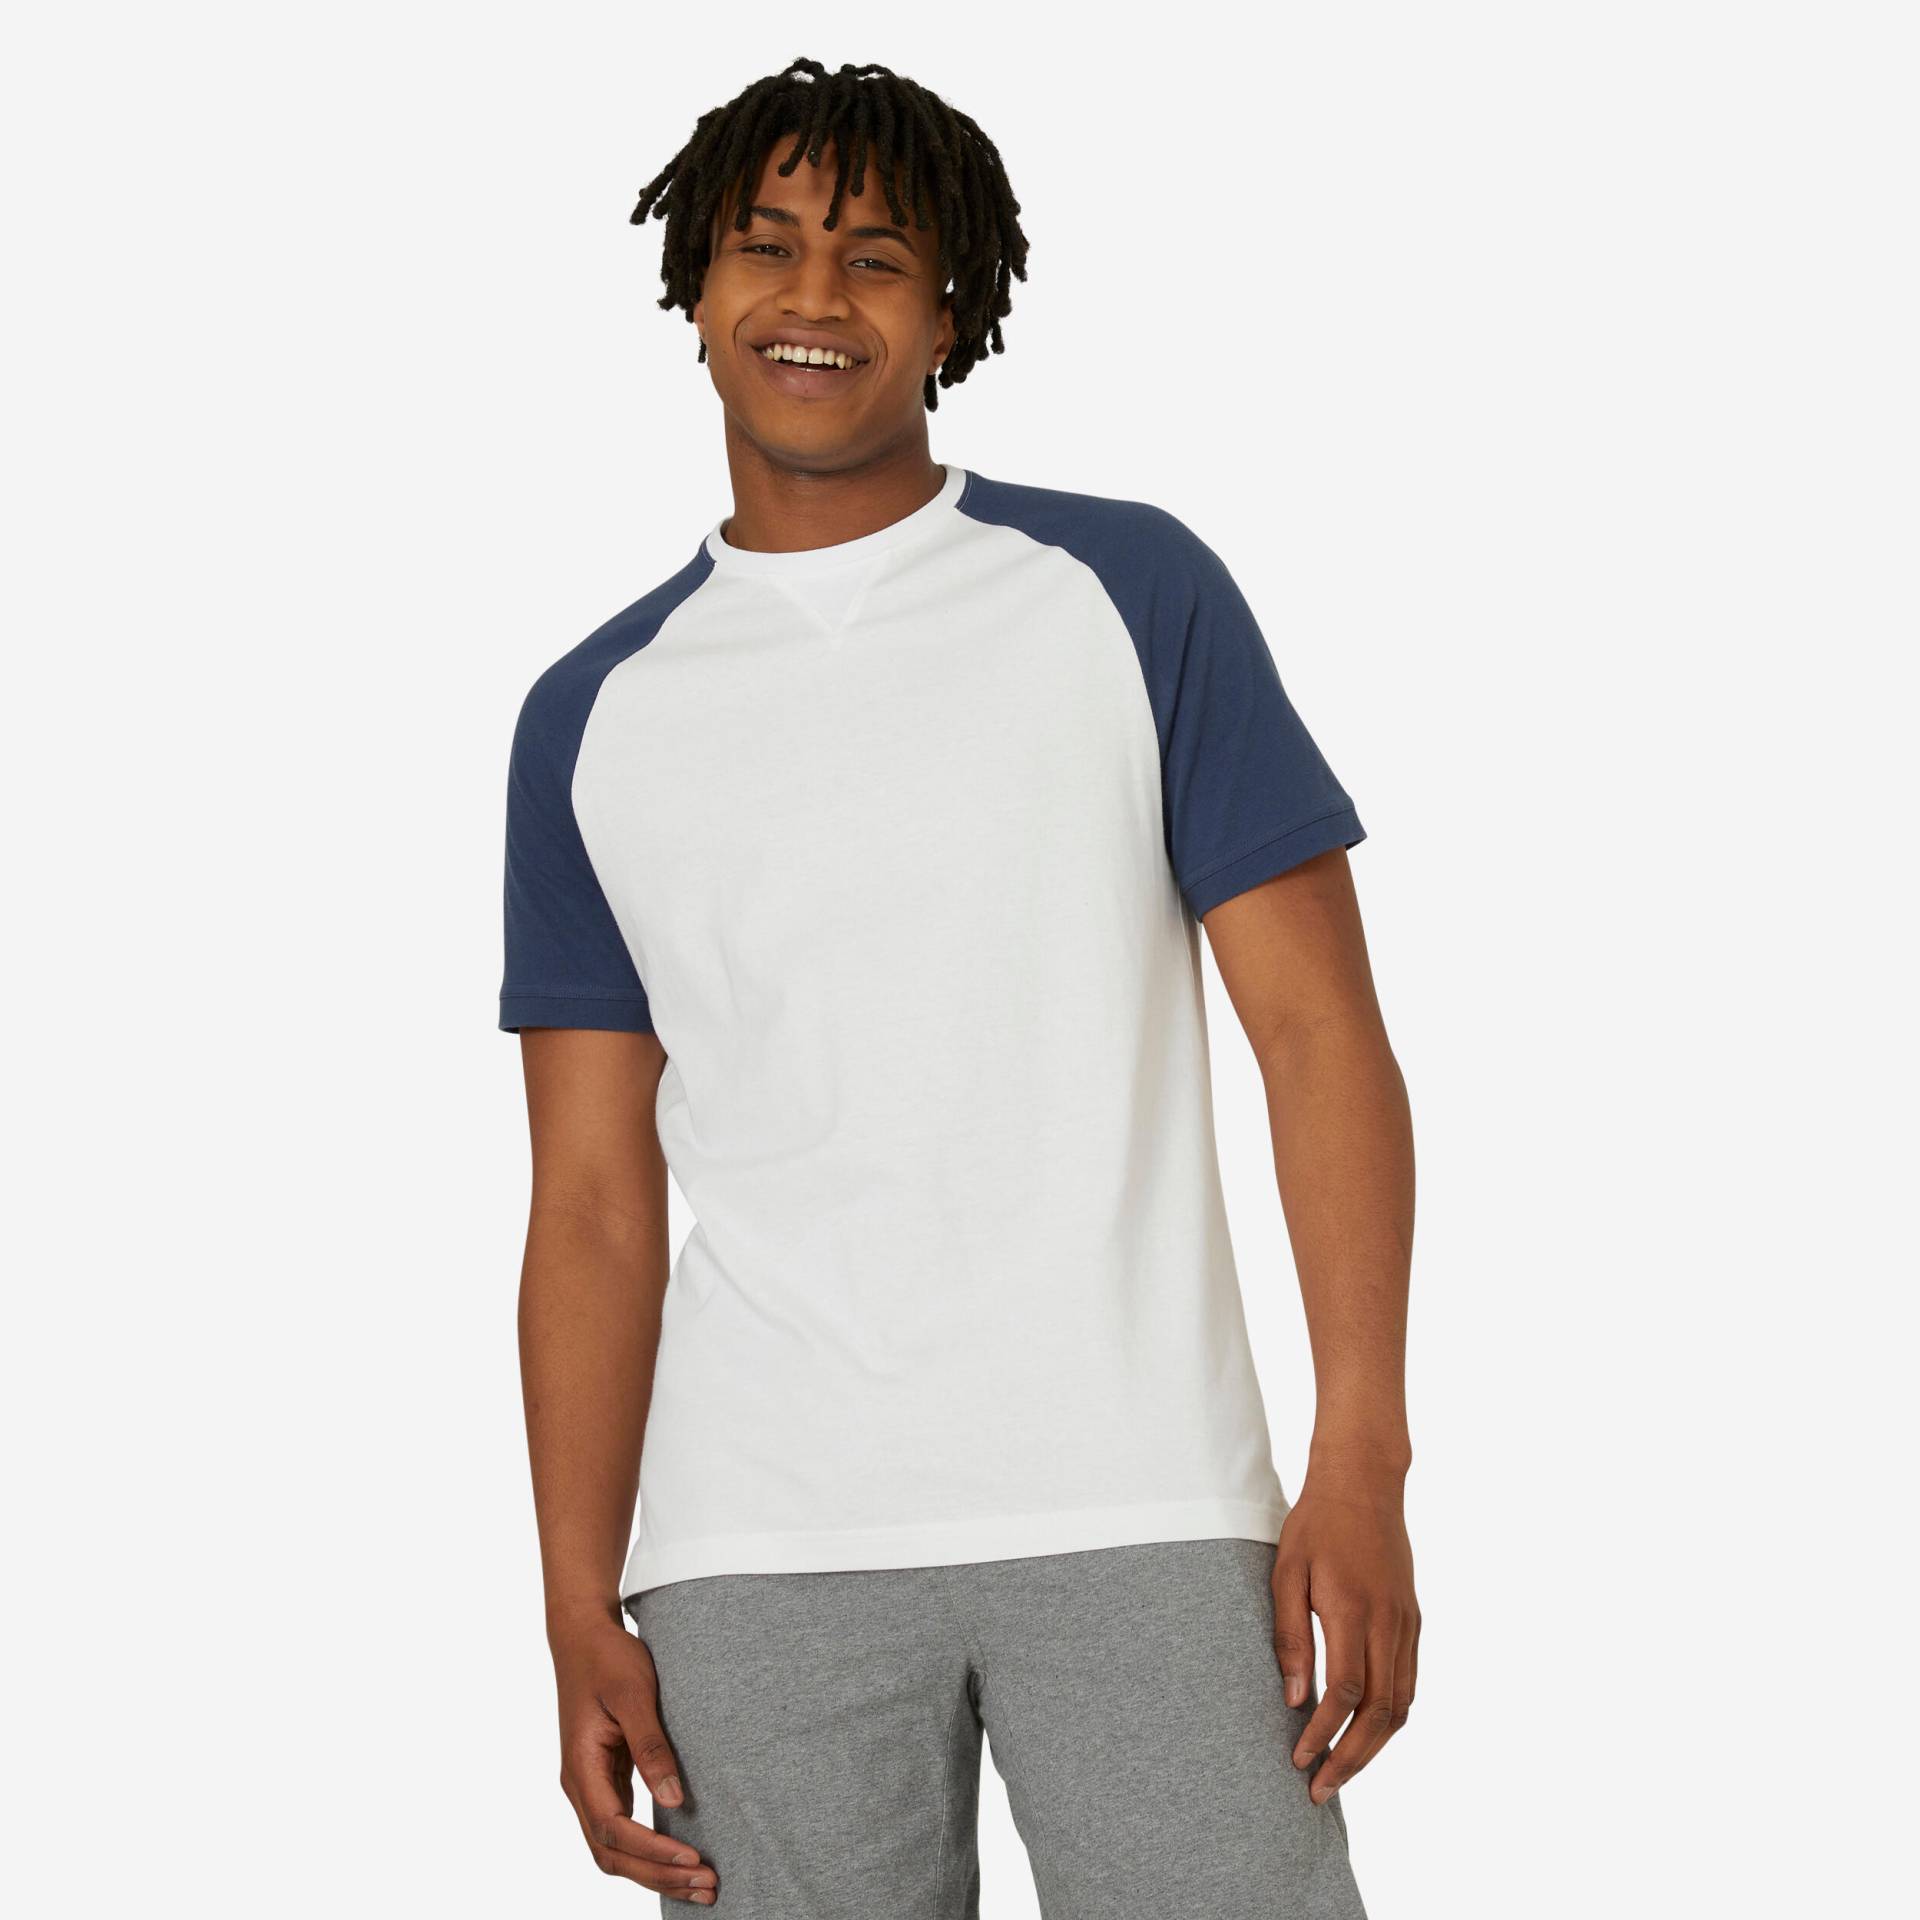 T-Shirt Herren - 520 weiss/blau von Domyos